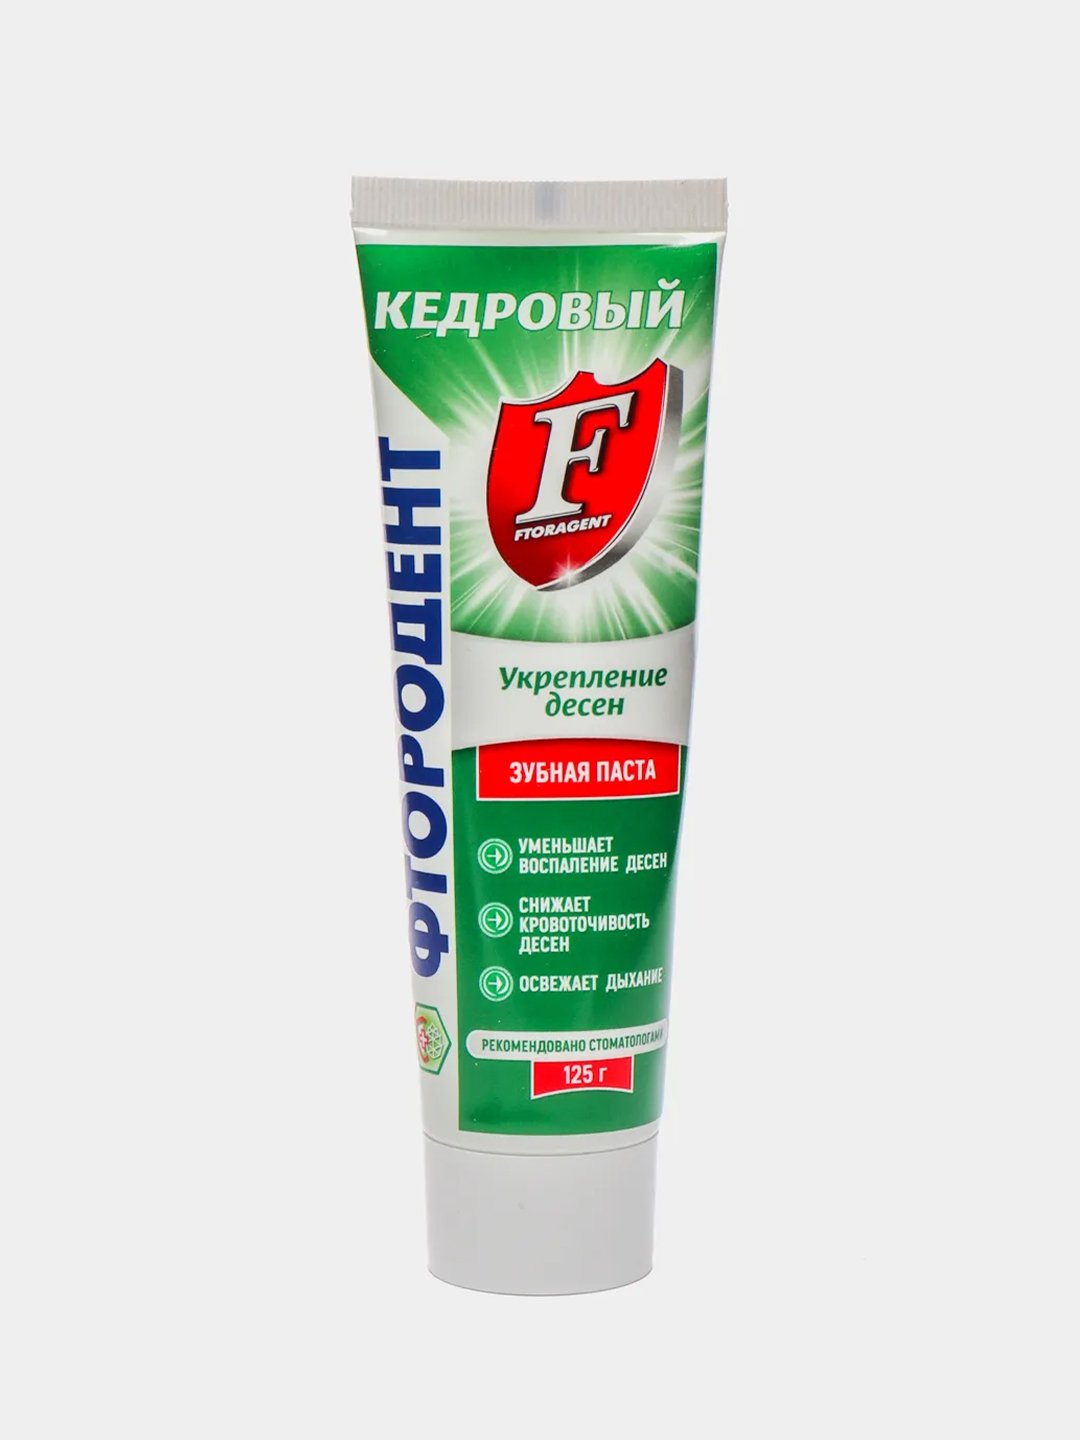 ЗубнаяпастаФтородент"Кедровый",125гкупитьпоцене68₽винтернет-магазинеKazanExpress